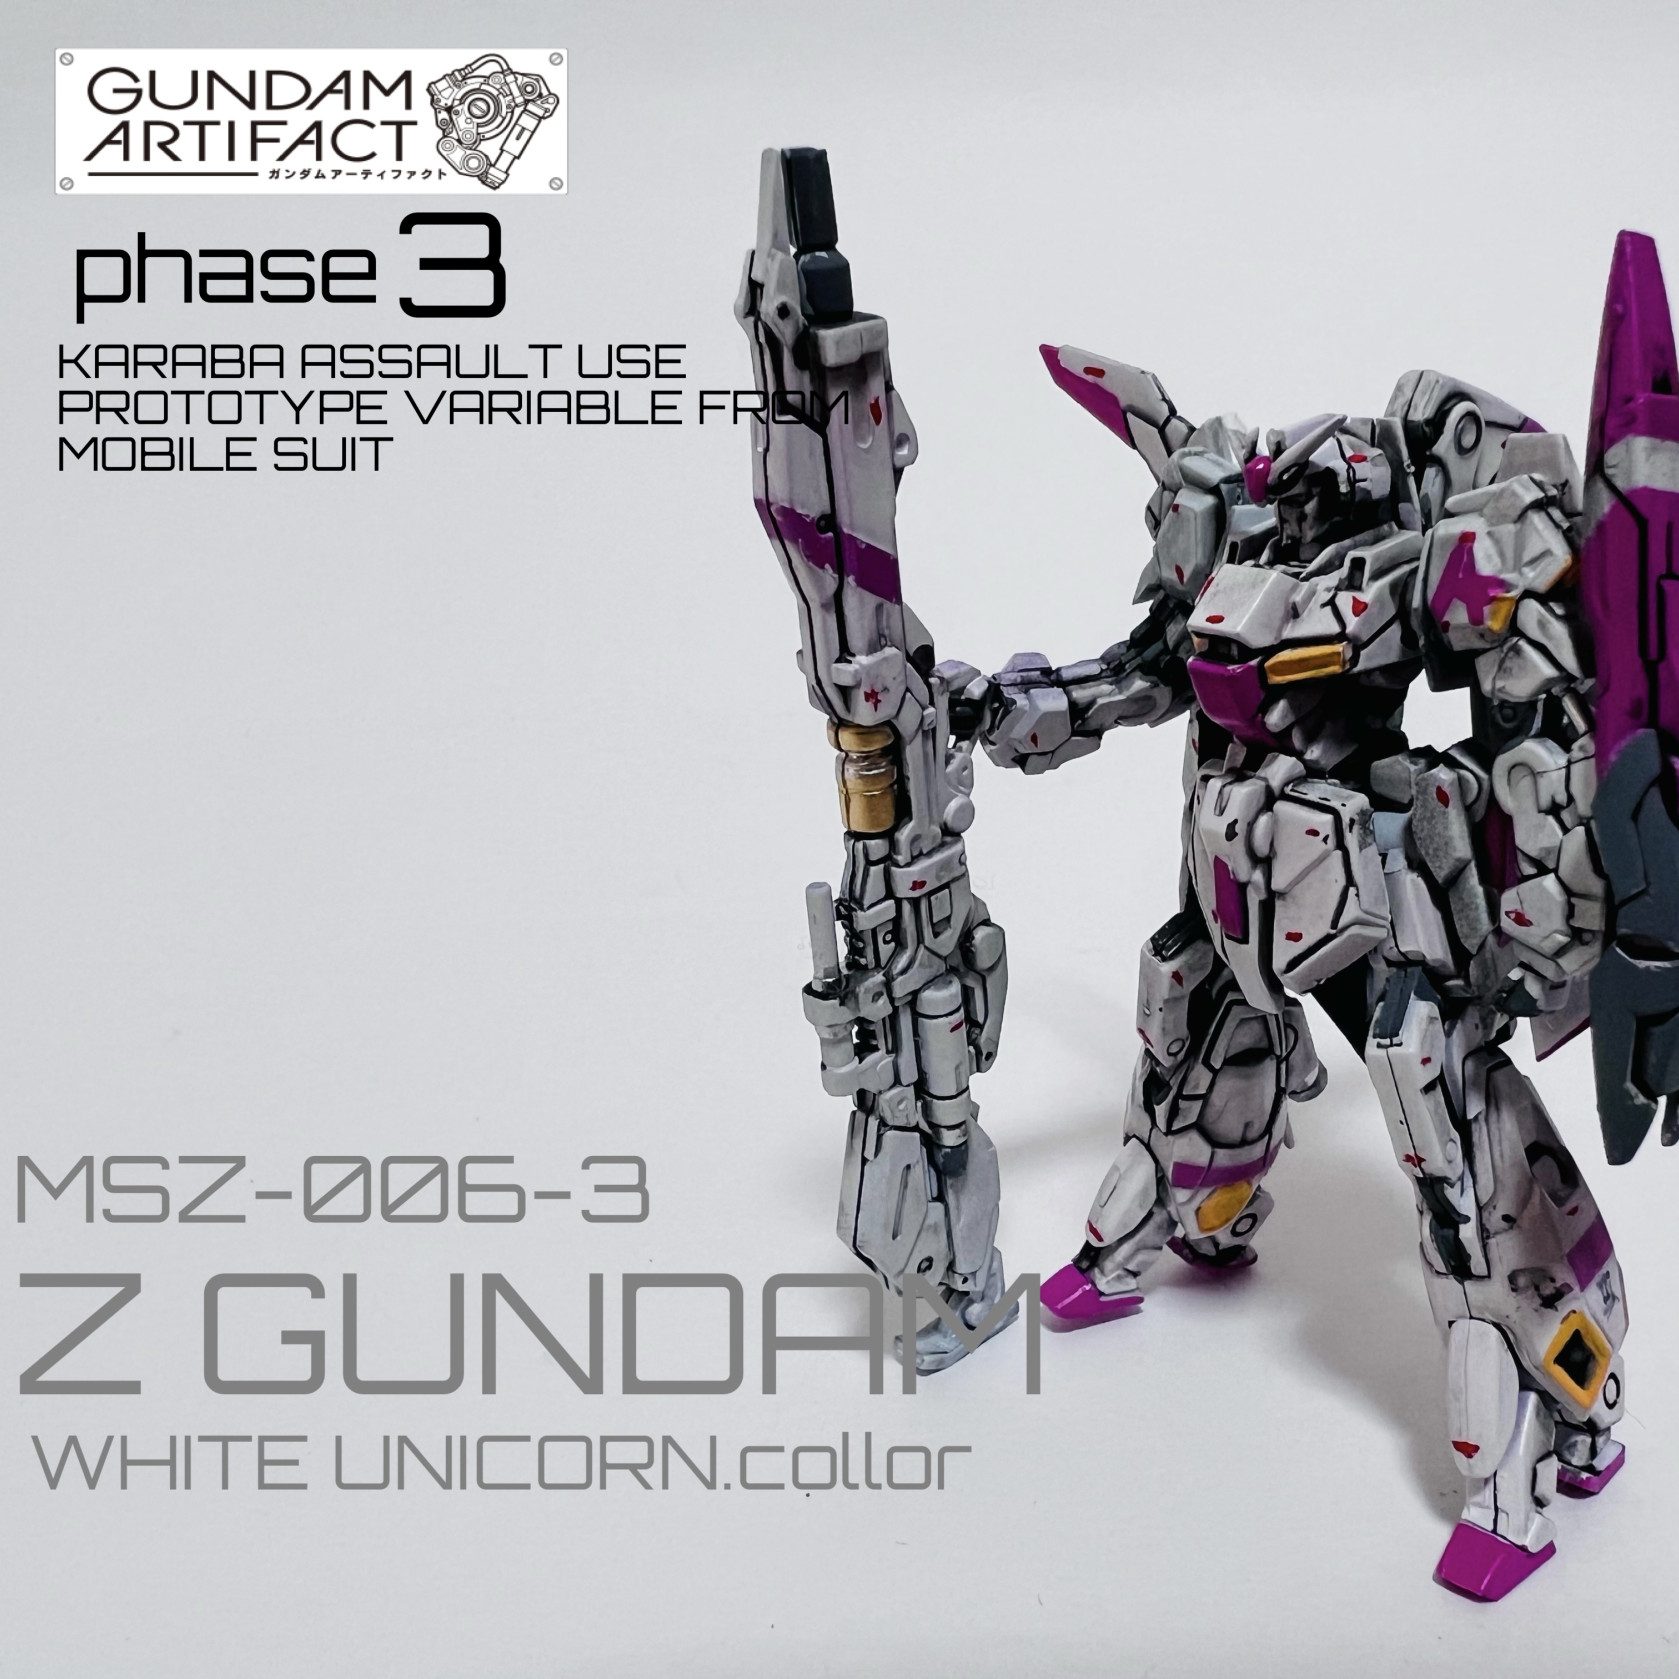 GUNDAM ARTIFACT ガンダムアーティファクトMSZ-006-3 ゼータガンダム3 